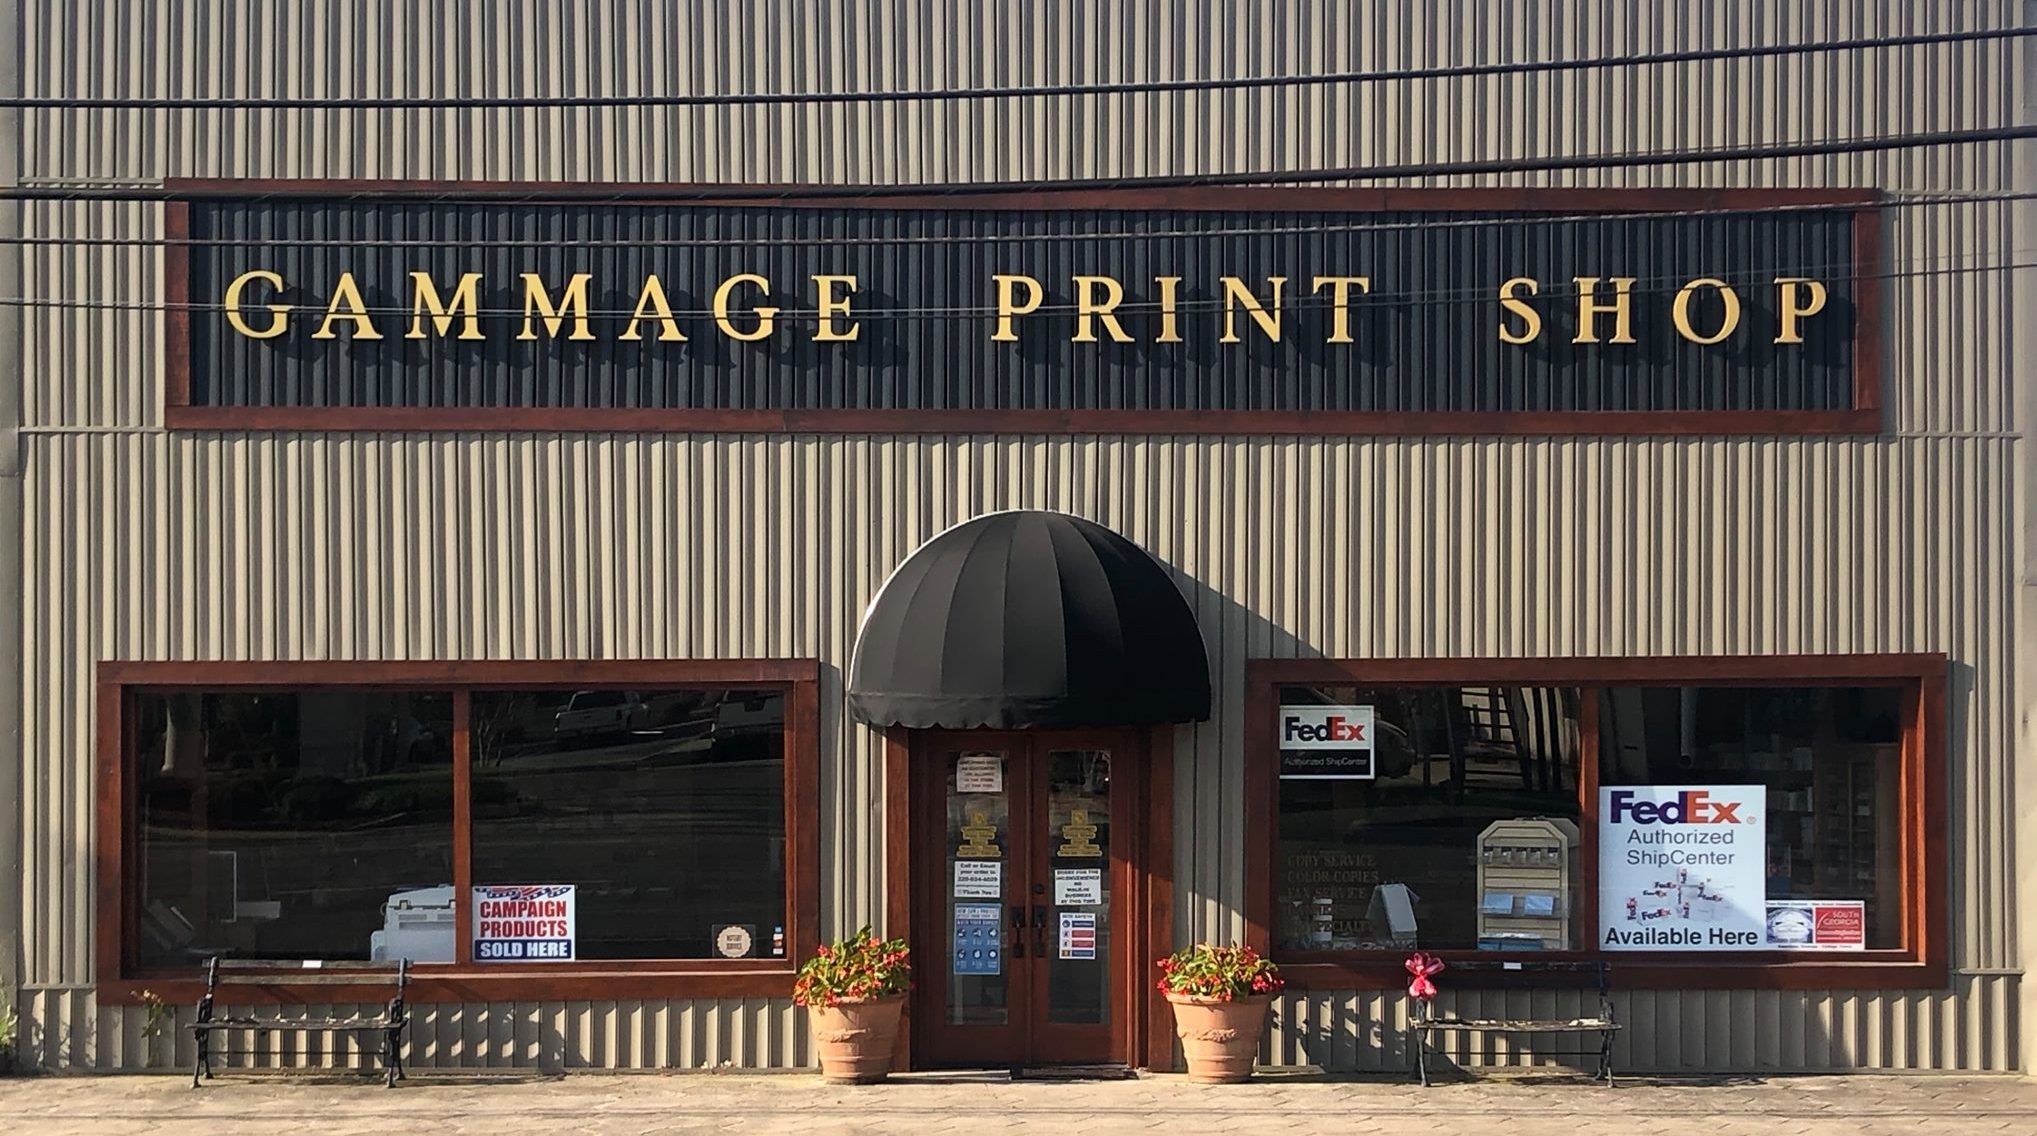 Gammage Print Shop